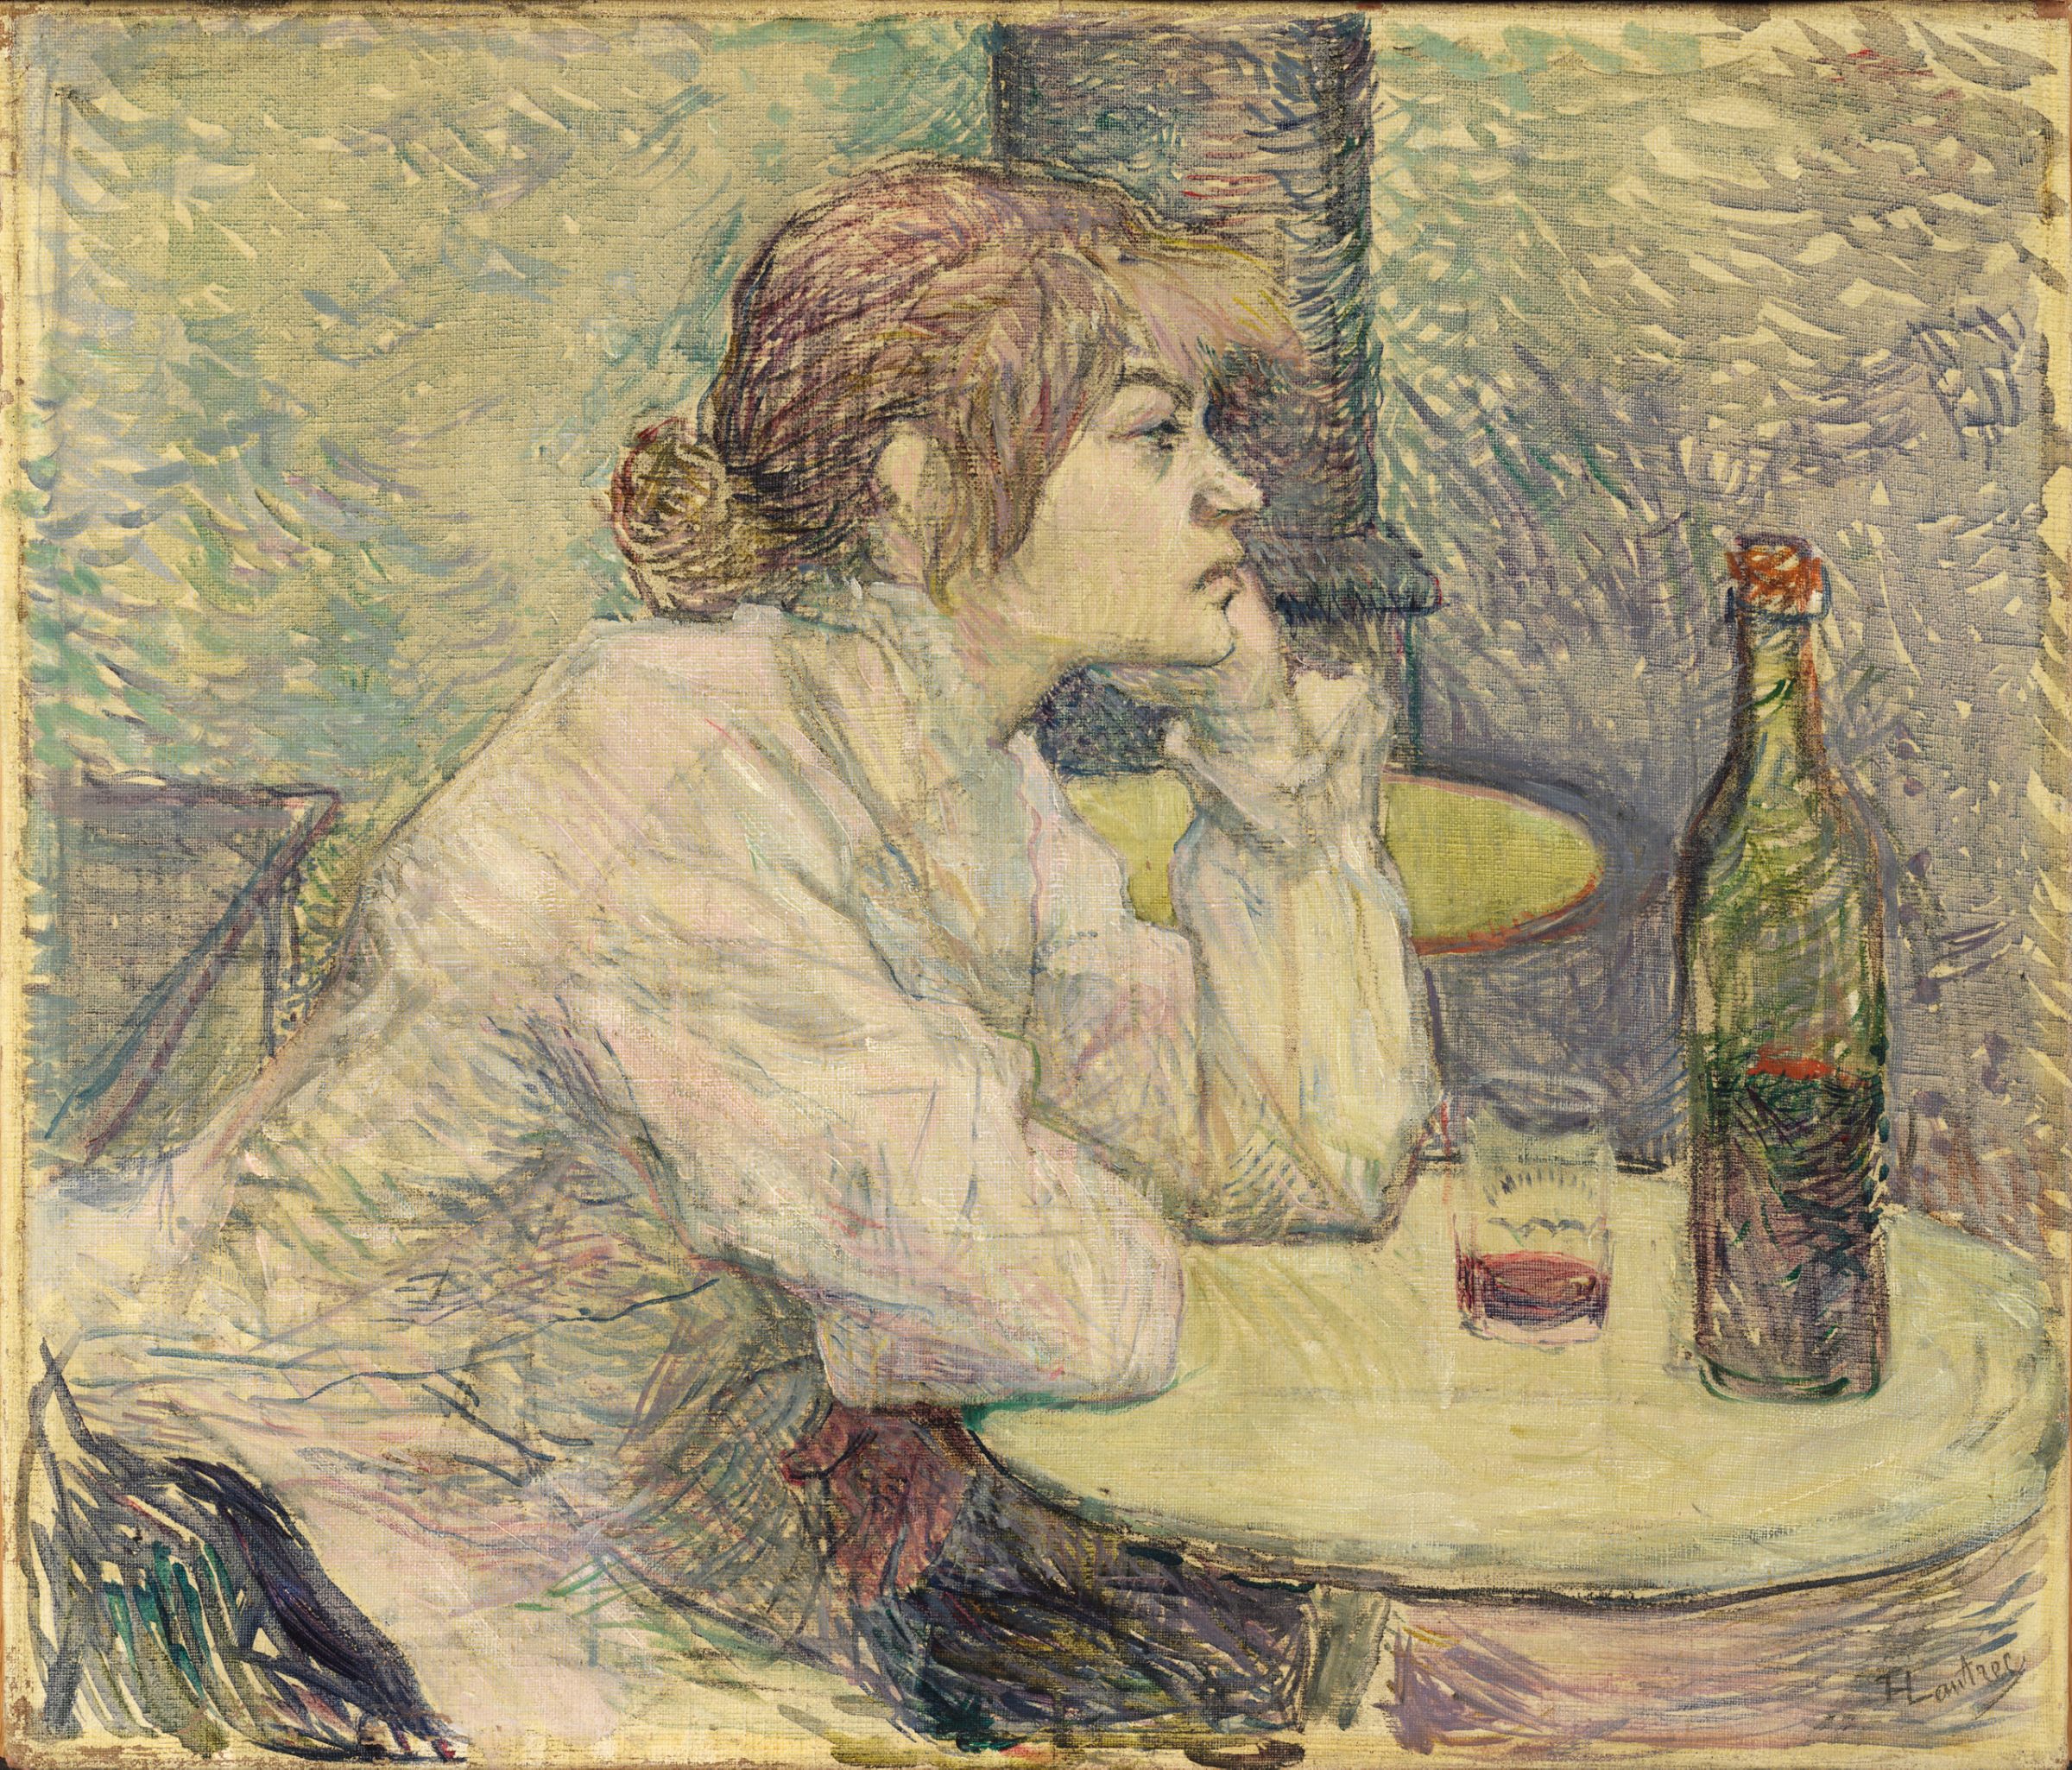 A másnaposság (Suzanne Valadon) by Henri de Toulouse-Lautrec - 1887-89 - 55,3 x 47 cm 